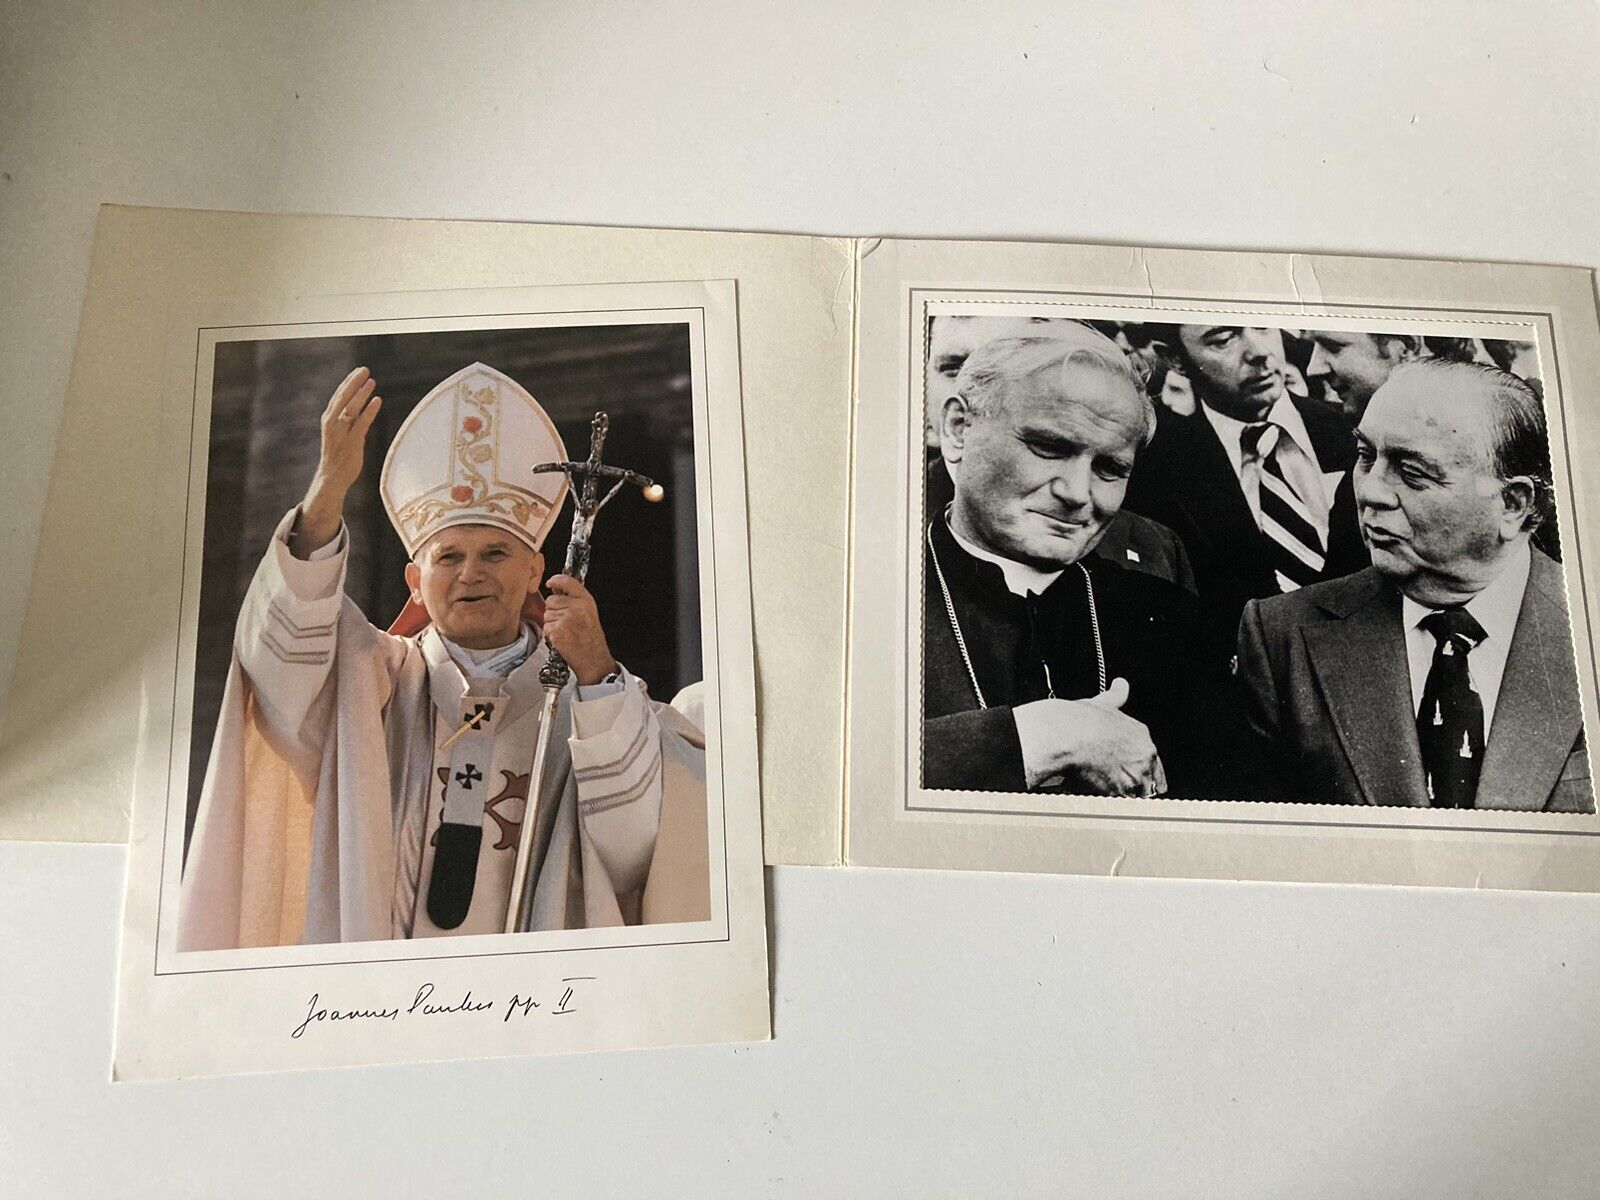 POPE JOHN PAUL II GLOSSY PHOTO 1979 CARDINAL WOJTYLA w CHICAGO MAYOR DALEY 1976